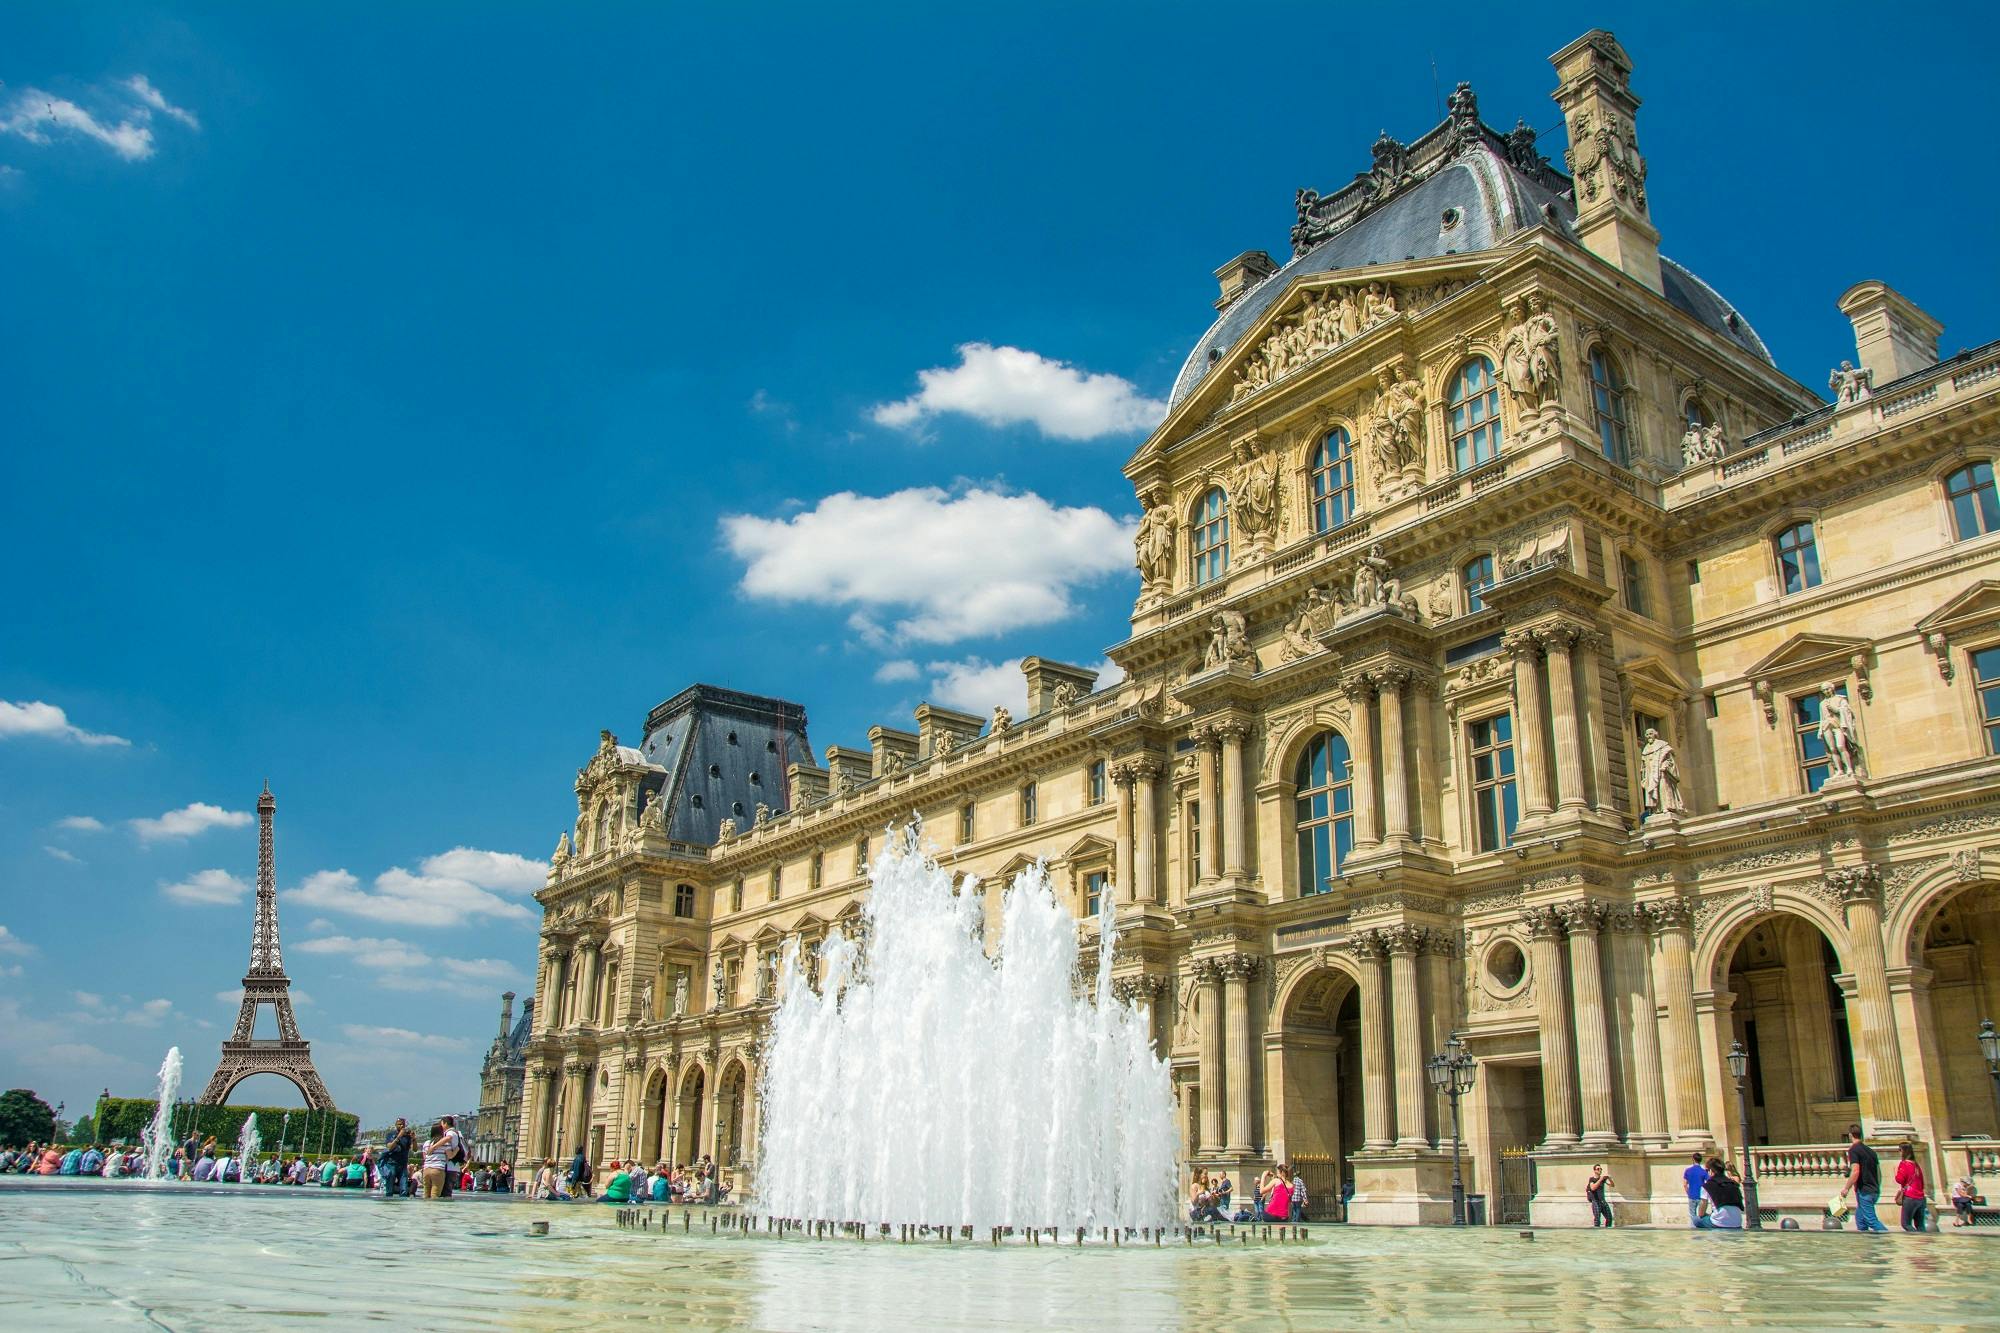 Evite filas para o Museu do Louvre e cruzeiro pelo rio Sena